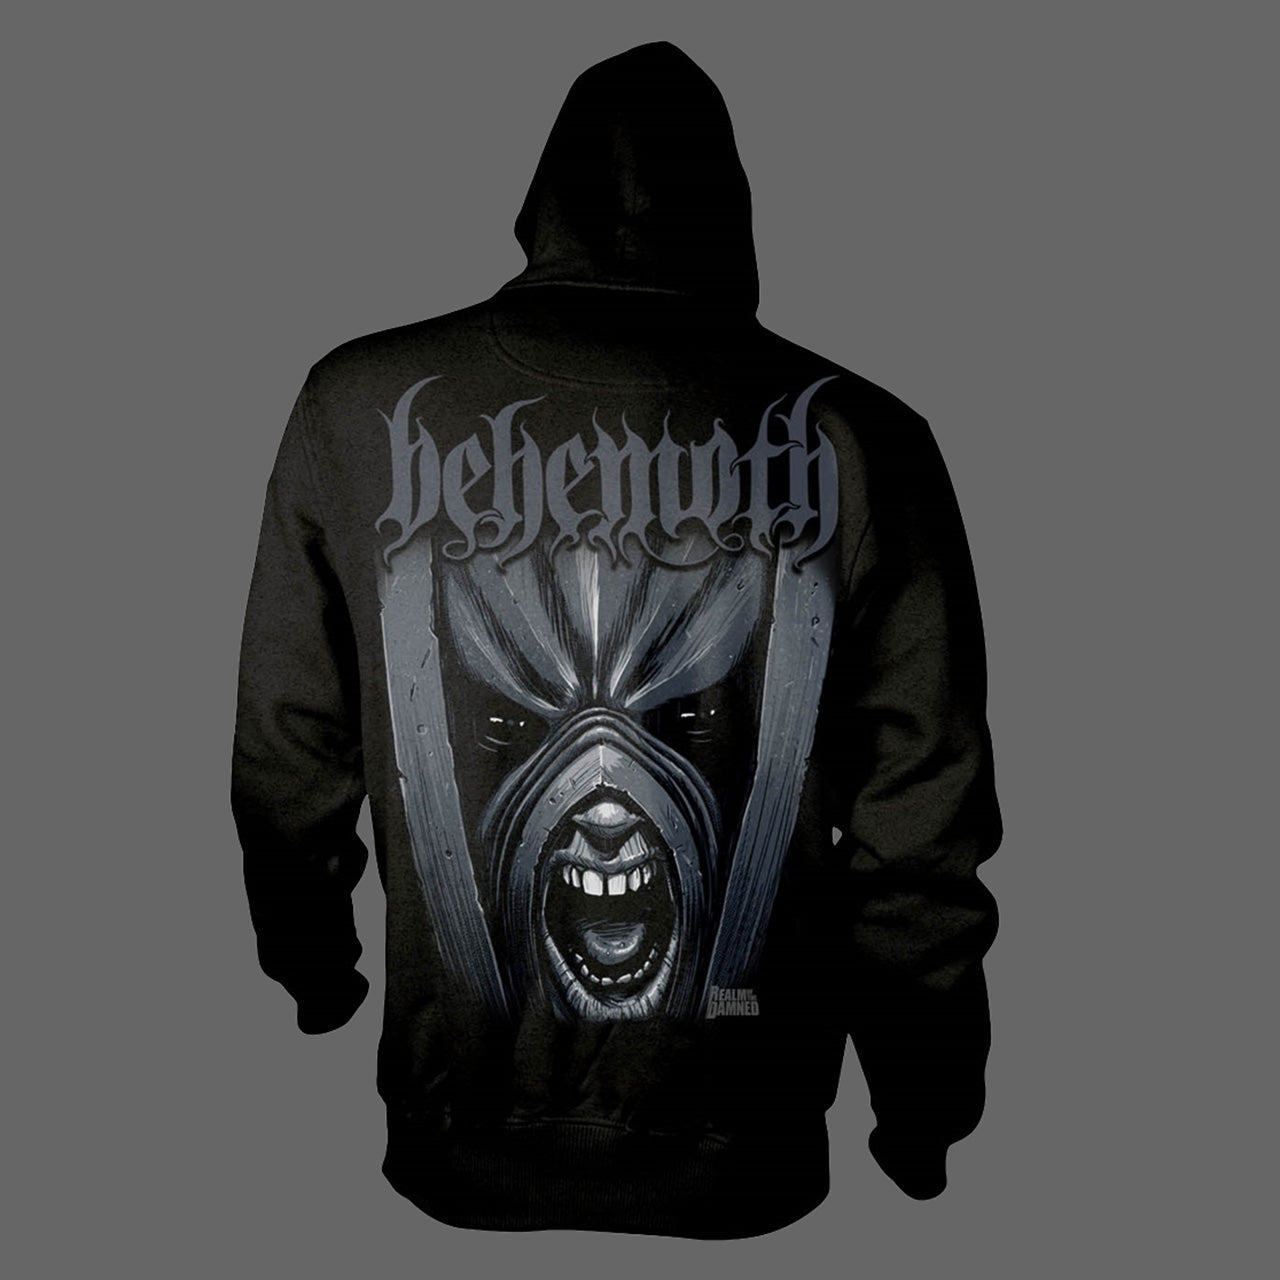 Behemoth - Realm of the Damned (Grey Logo) (Full Zip Hoodie)